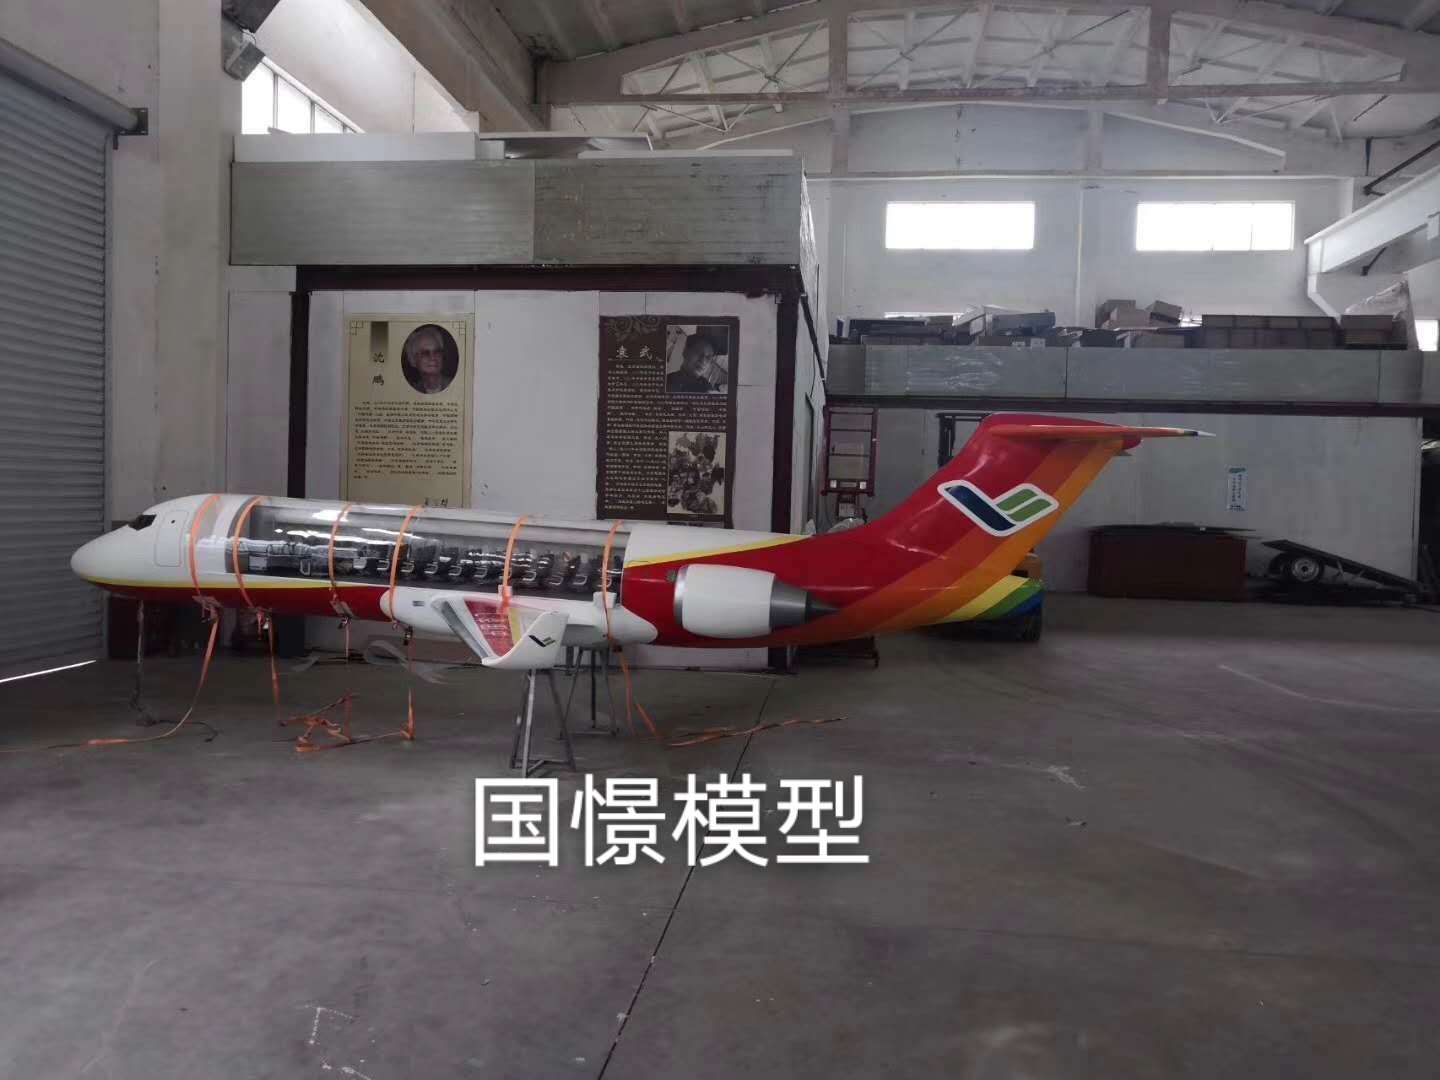 聂拉木县飞机模型